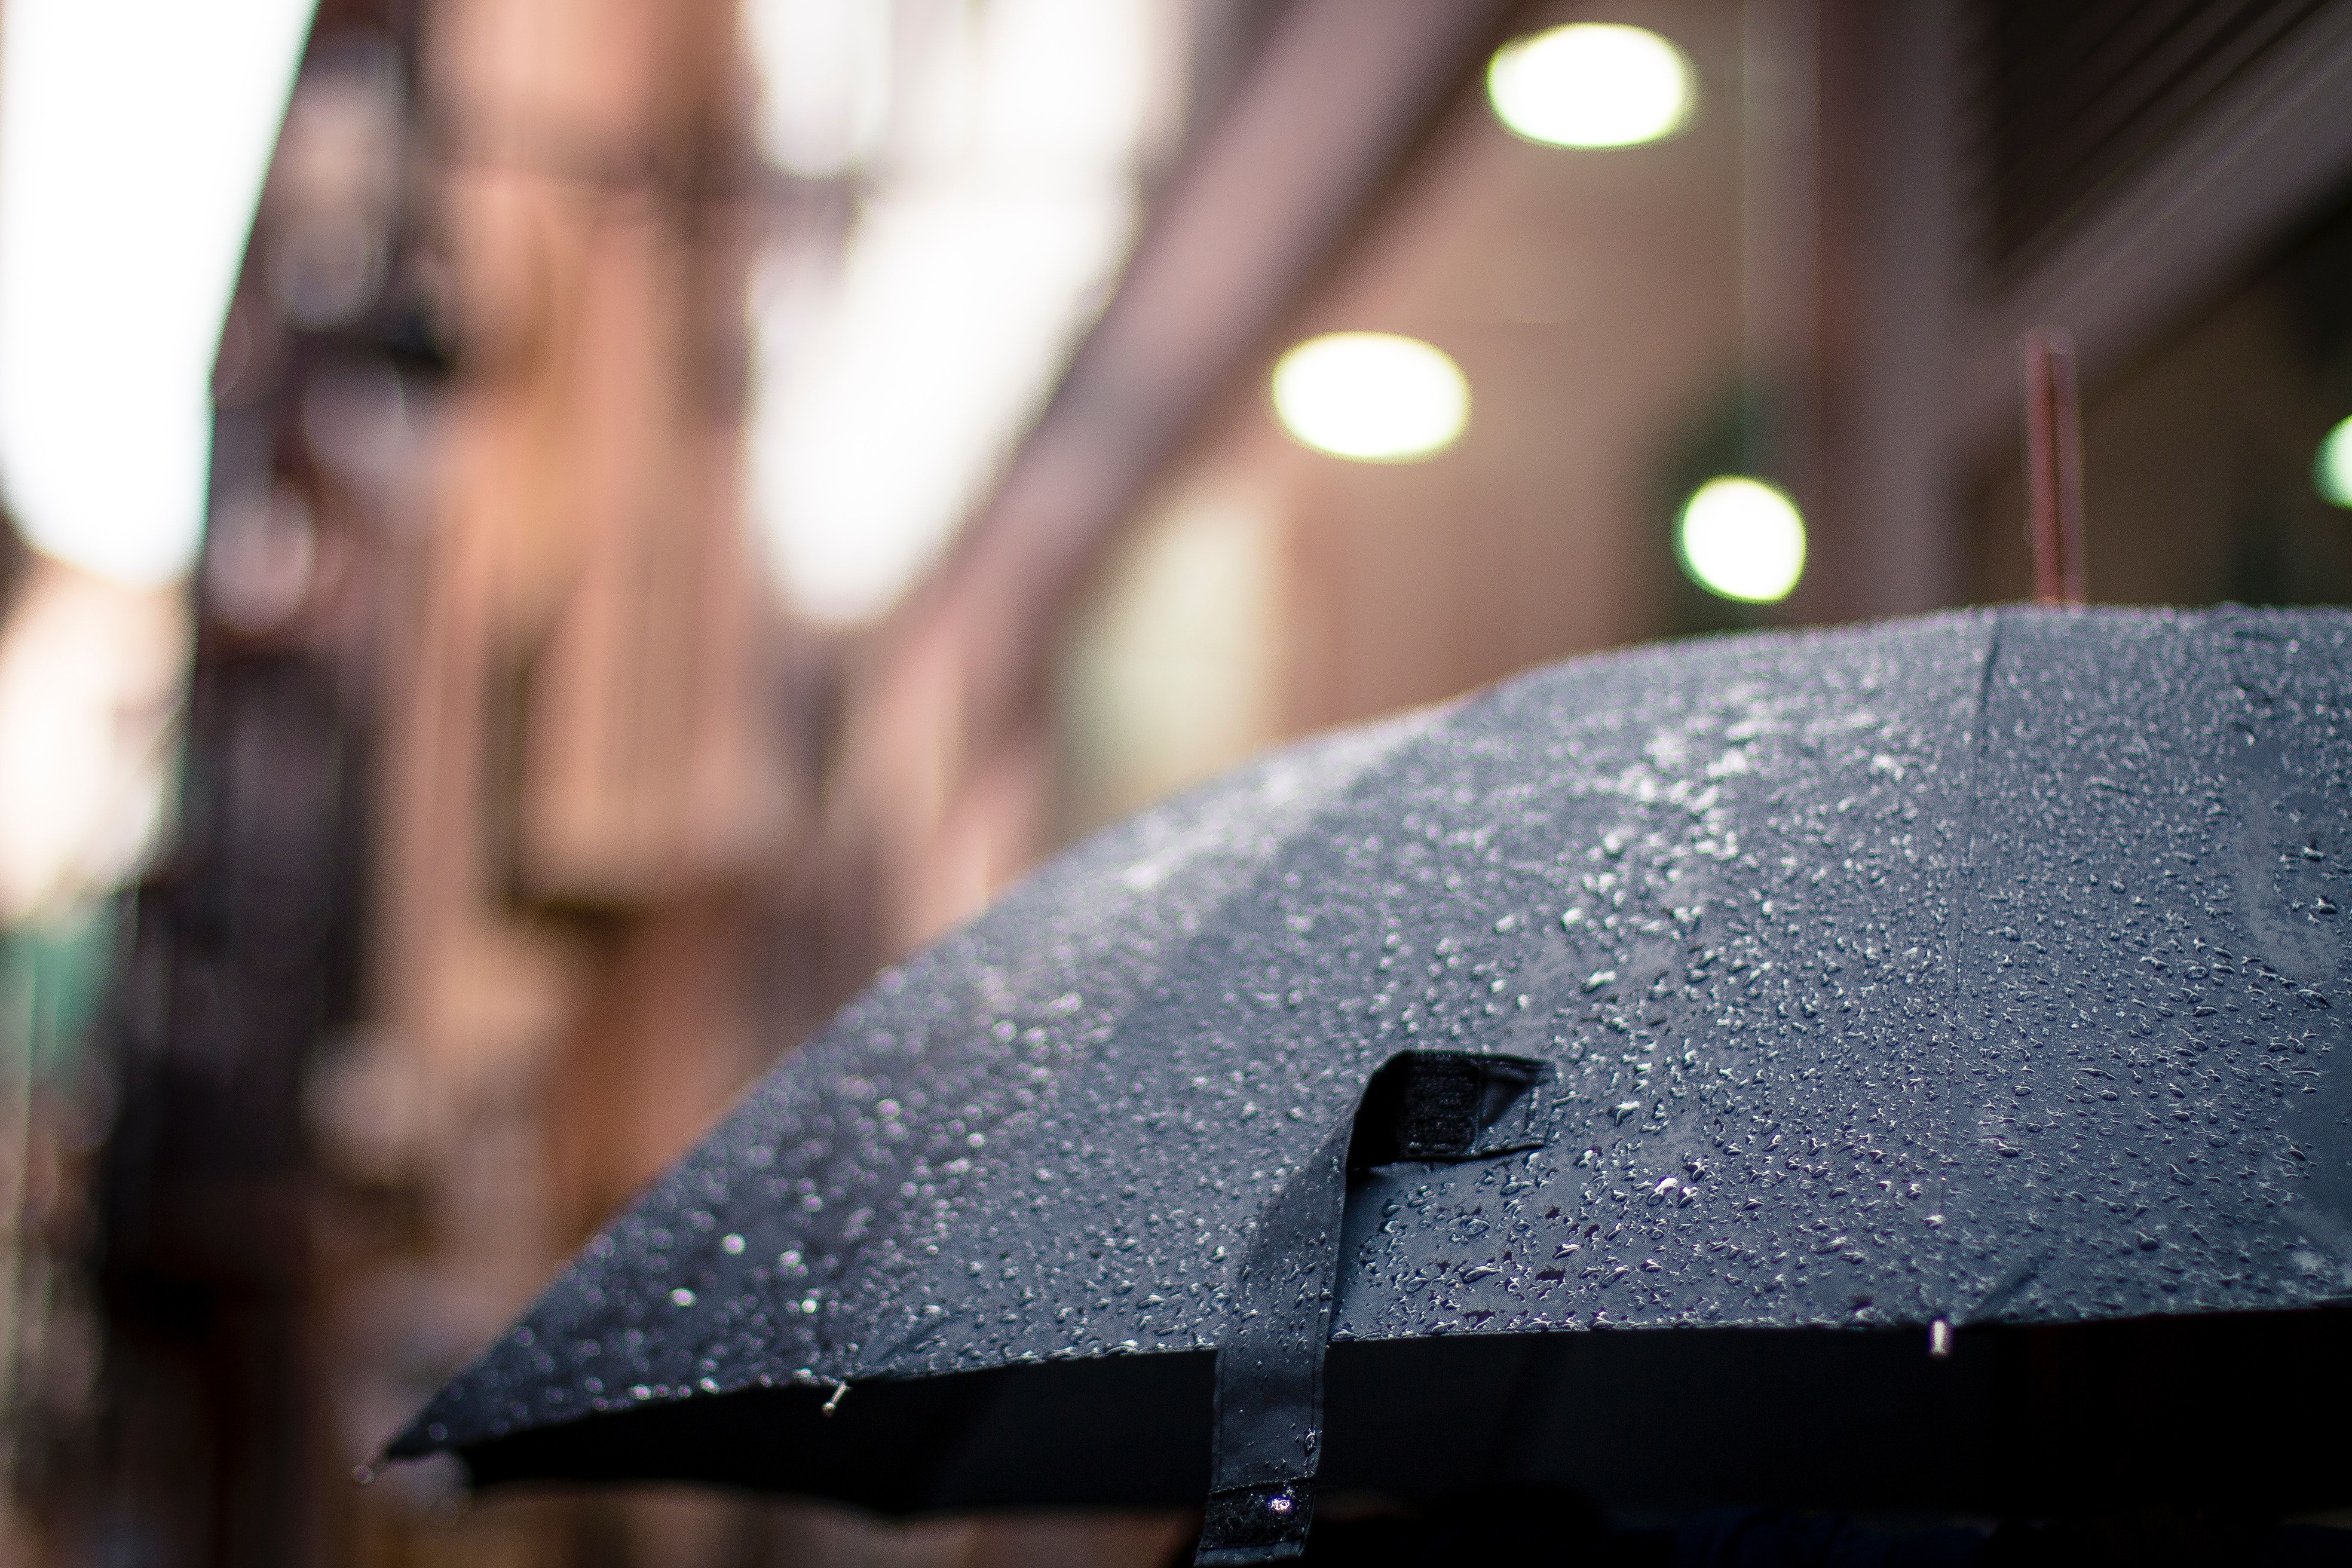 دانلود رایگان عکس چتر مشکی در باران برای اینستاگرام